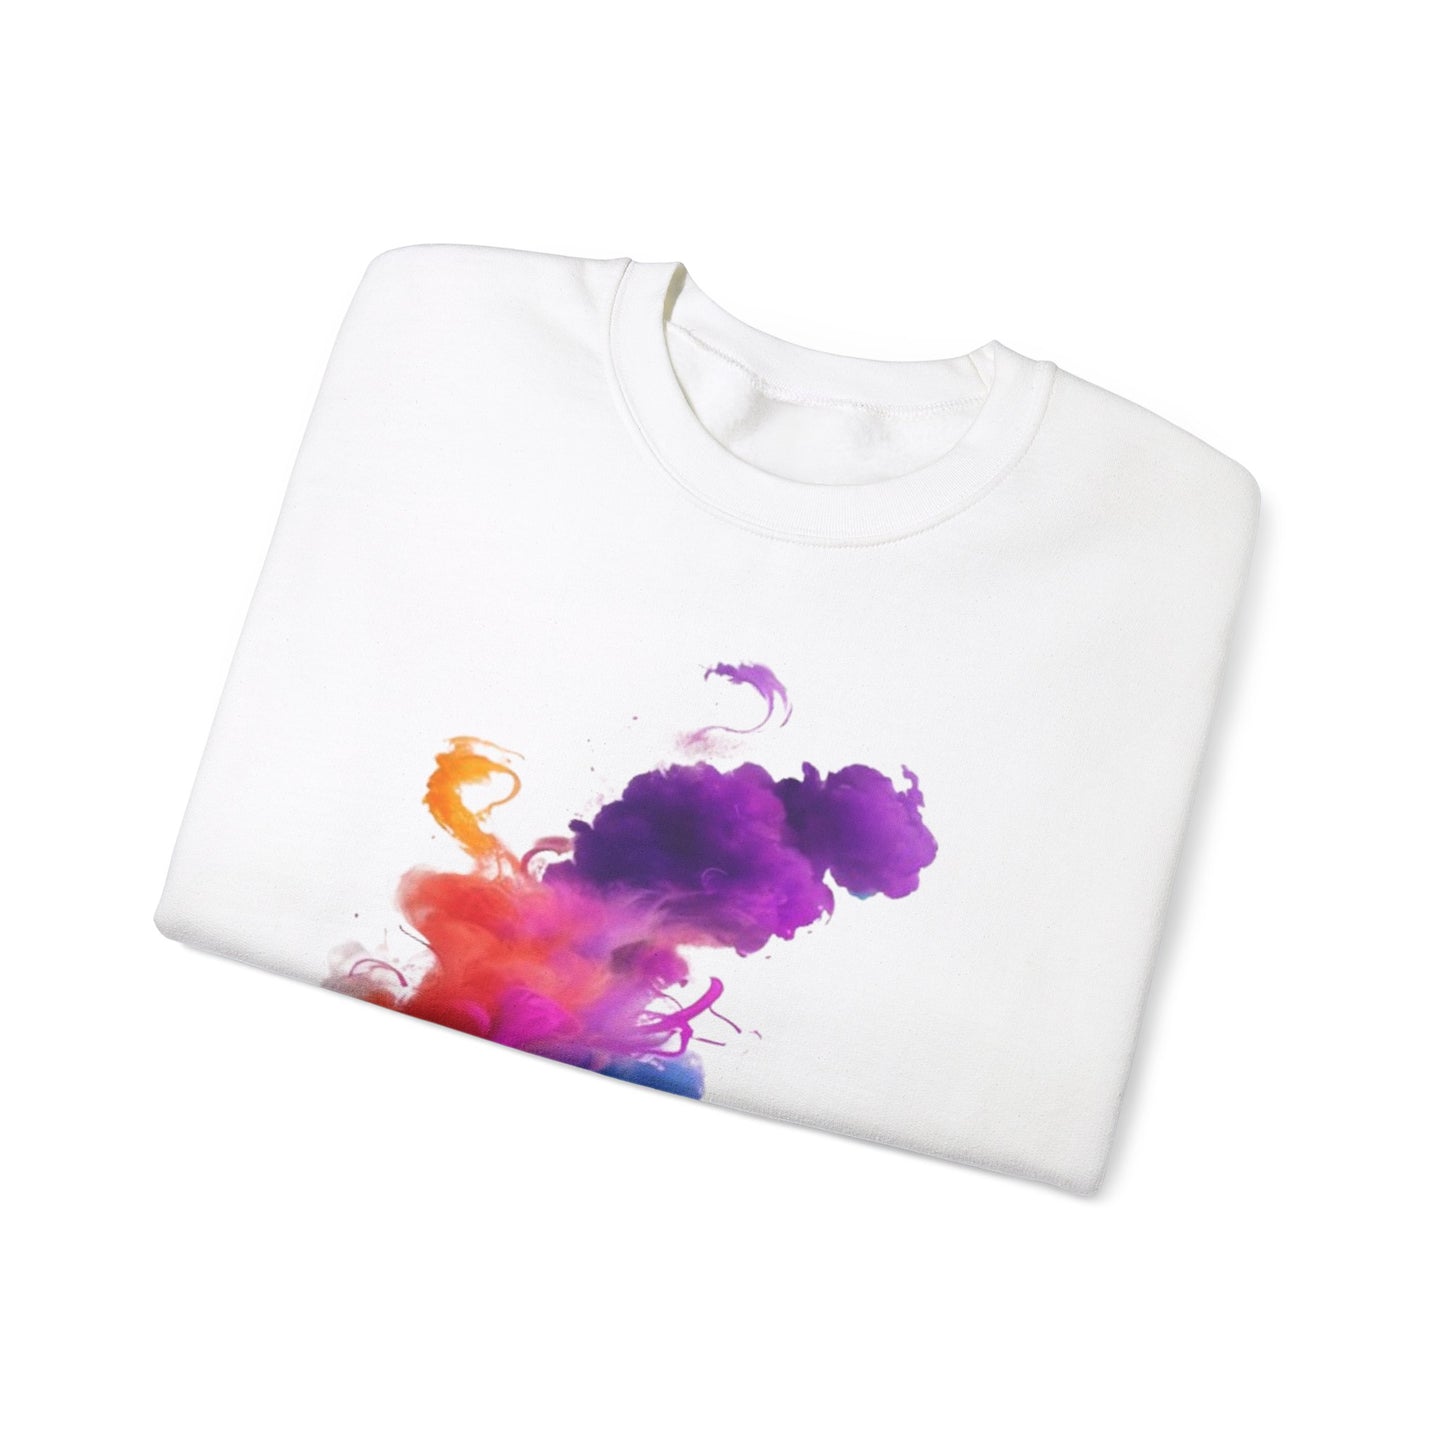 Colourful Smoke - Unisex Crewneck Sweatshirt